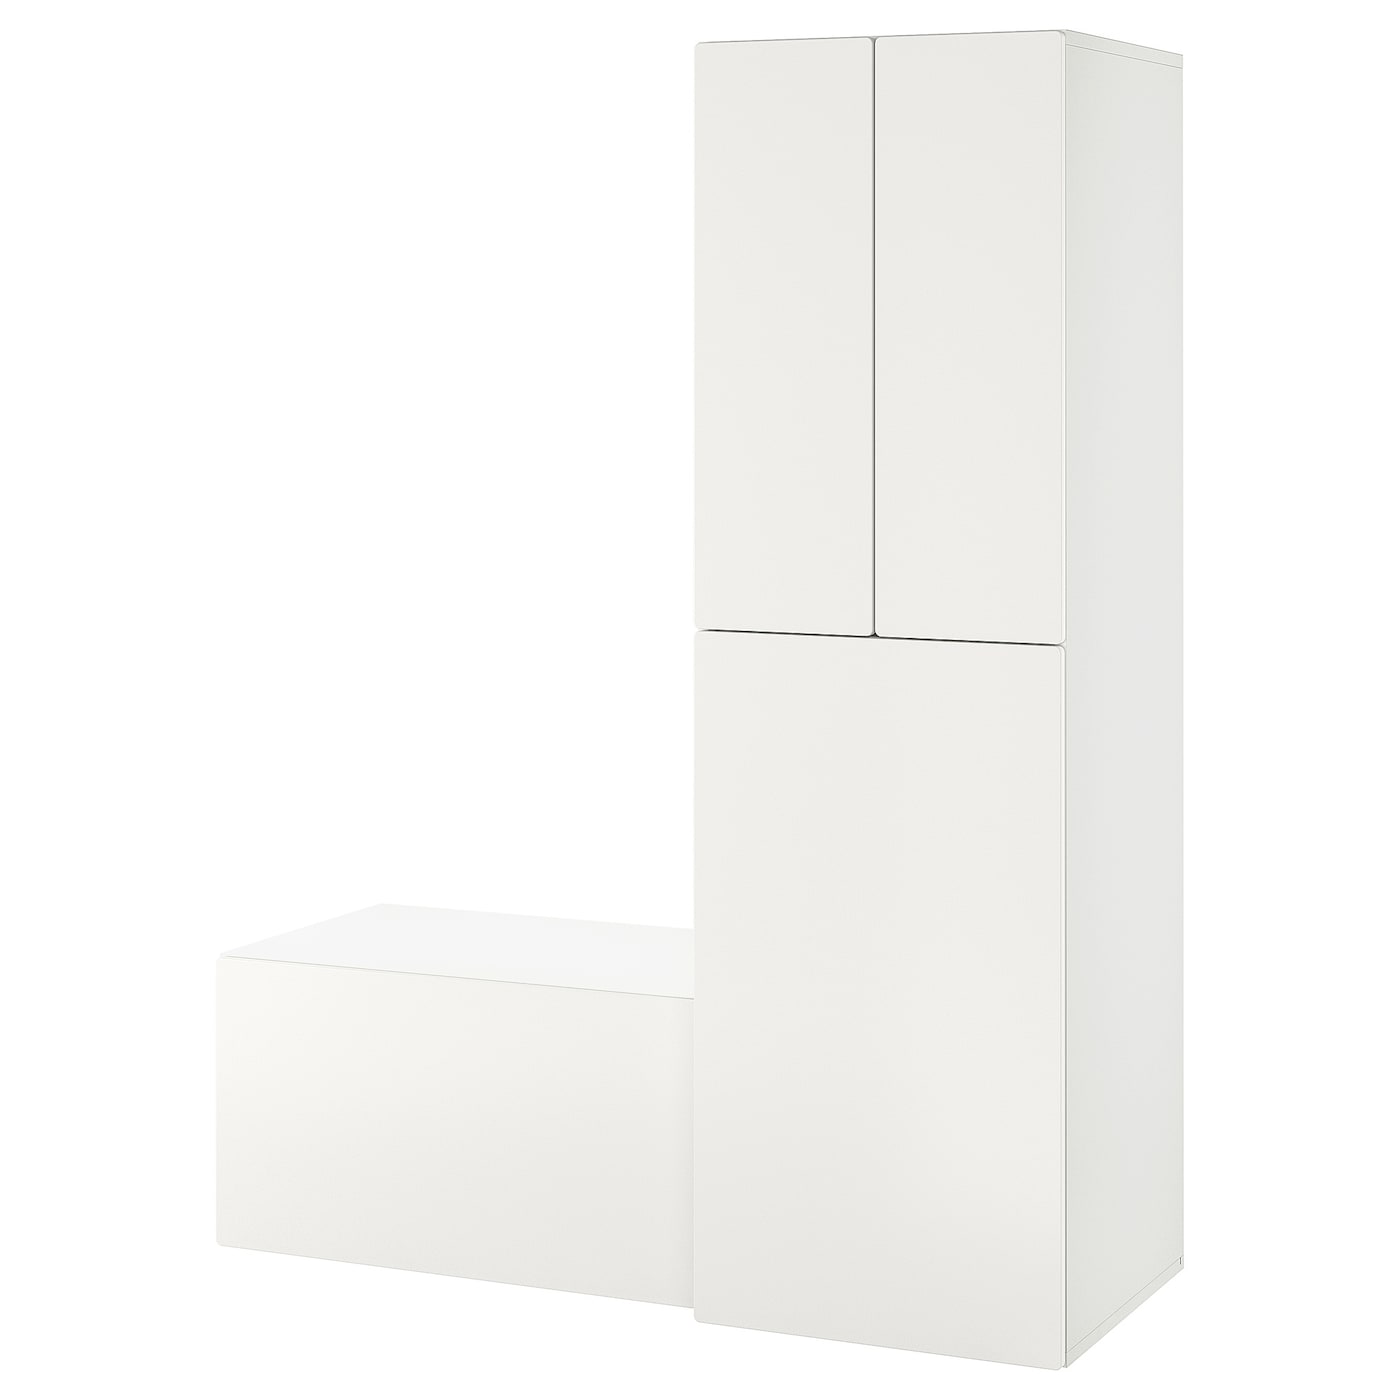 Детская гардеробная комбинация - IKEA PLATSA SMÅSTAD/SMASTAD, 196x57x150см, белый, ПЛАТСА СМОСТАД ИКЕА